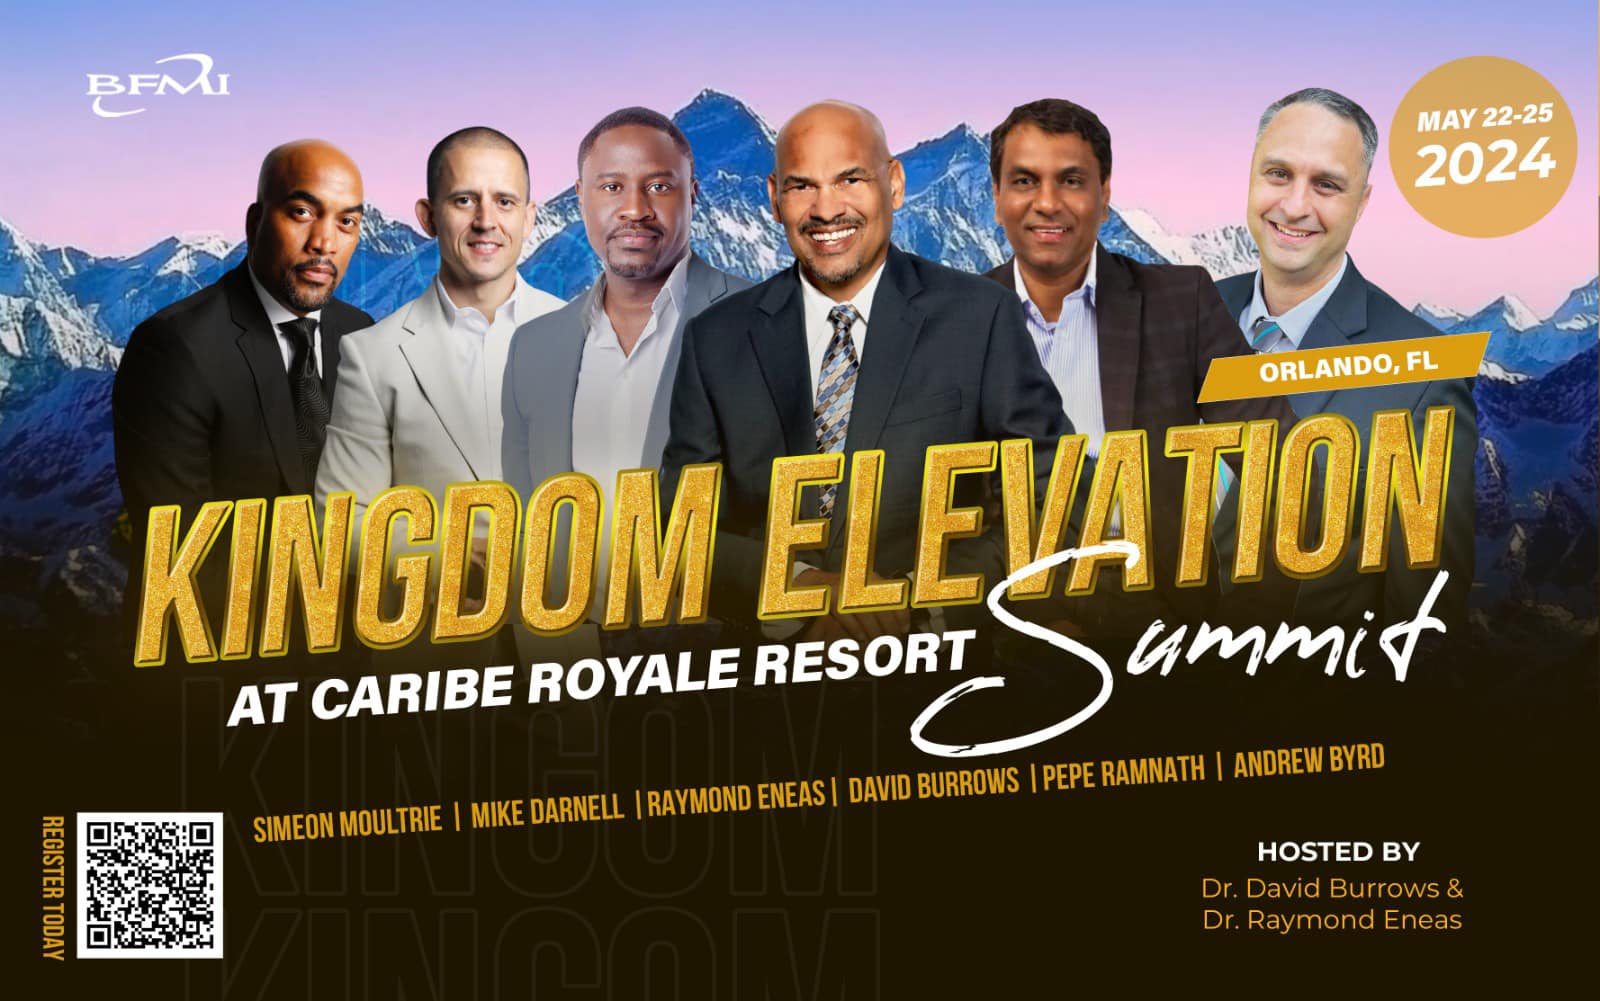 Kingdom Elevation Summit